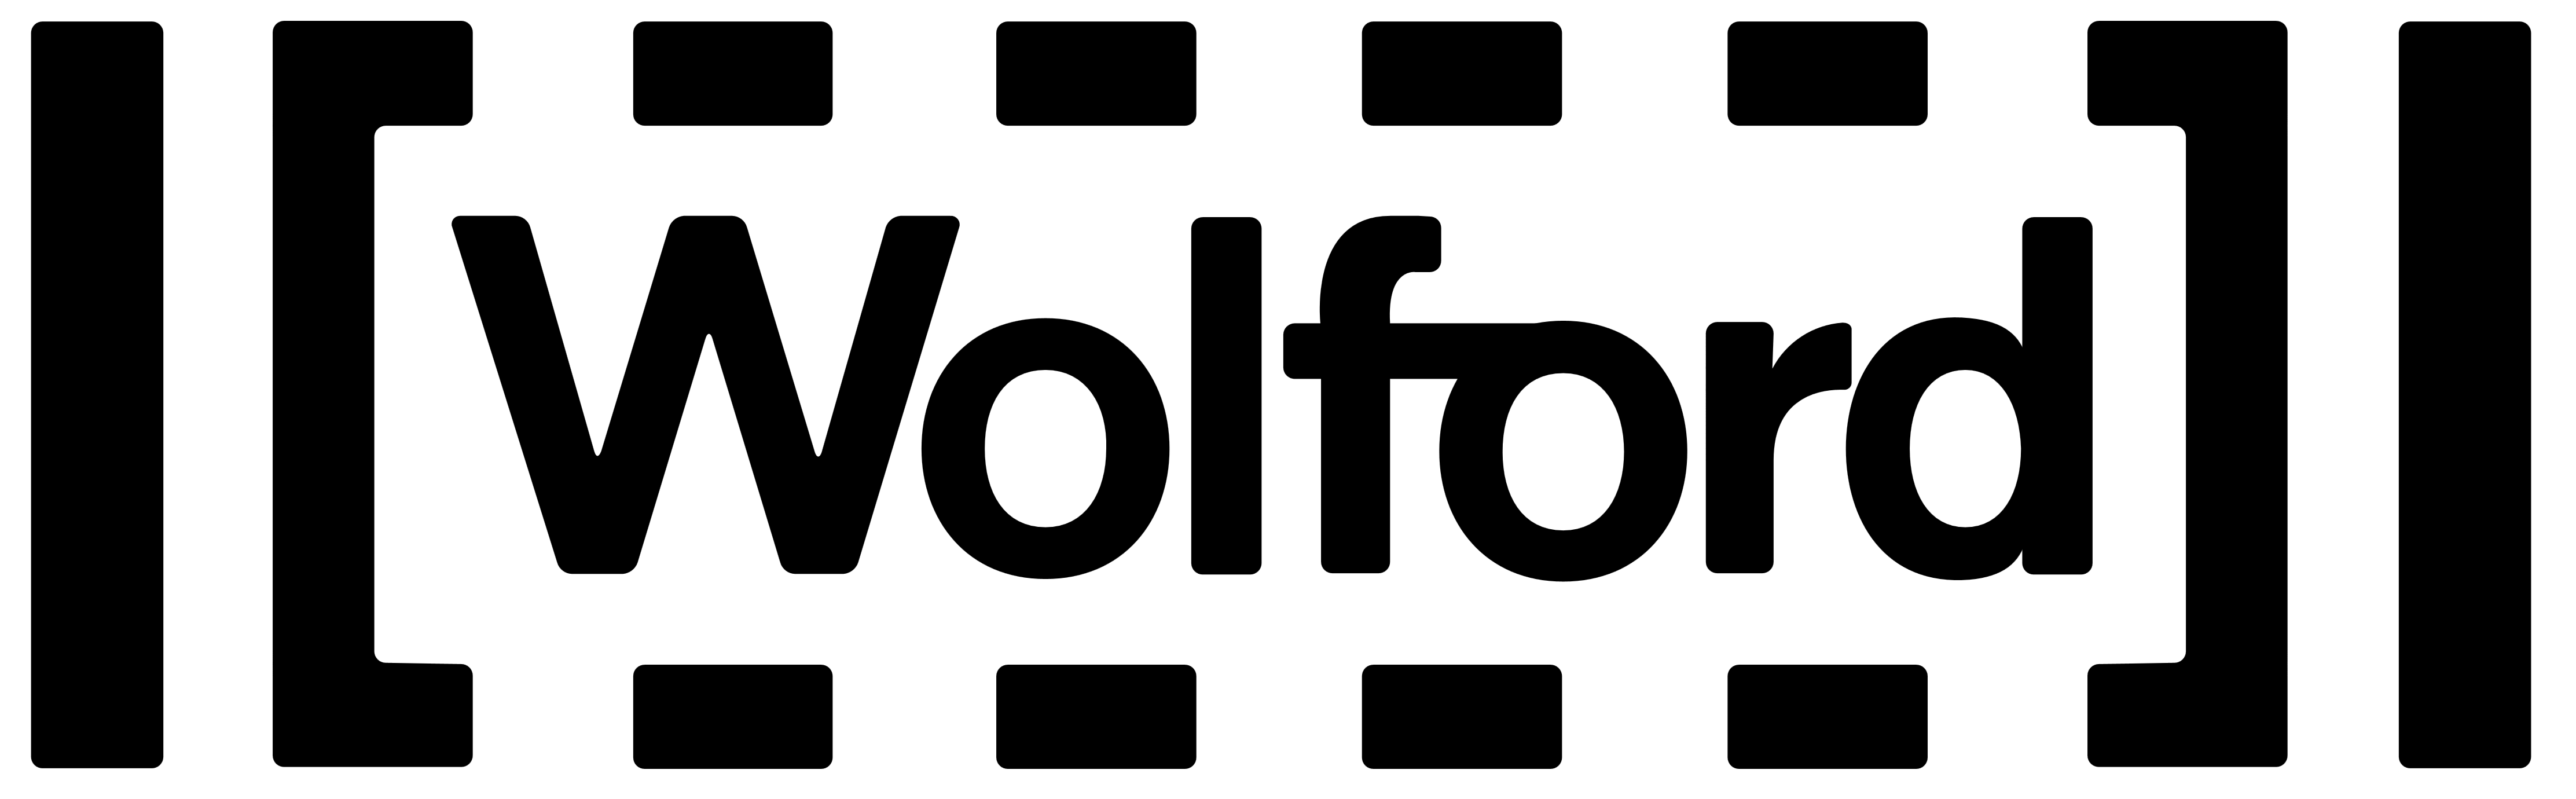 Wolford logo, logotype